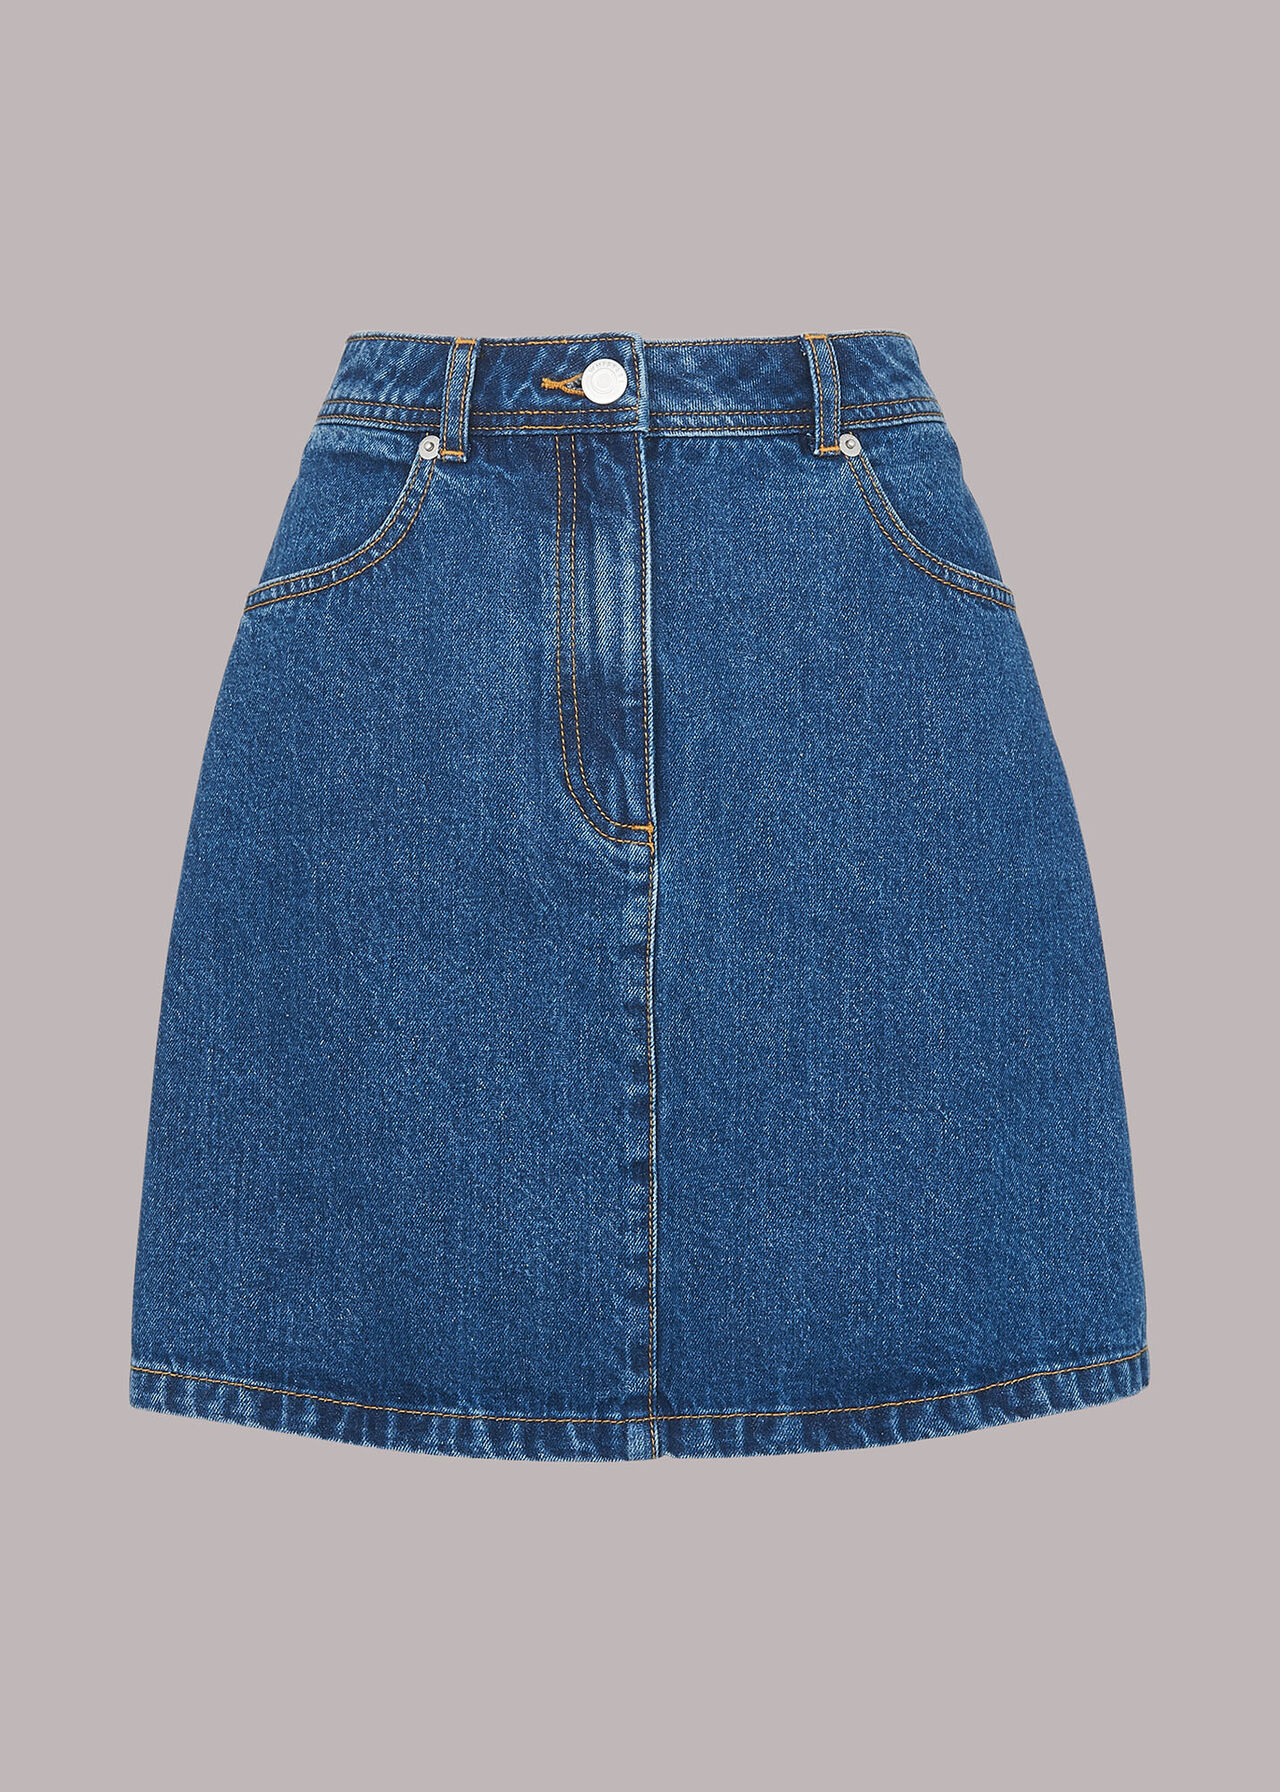 Denim Denim Pocket Mini Skirt | WHISTLES